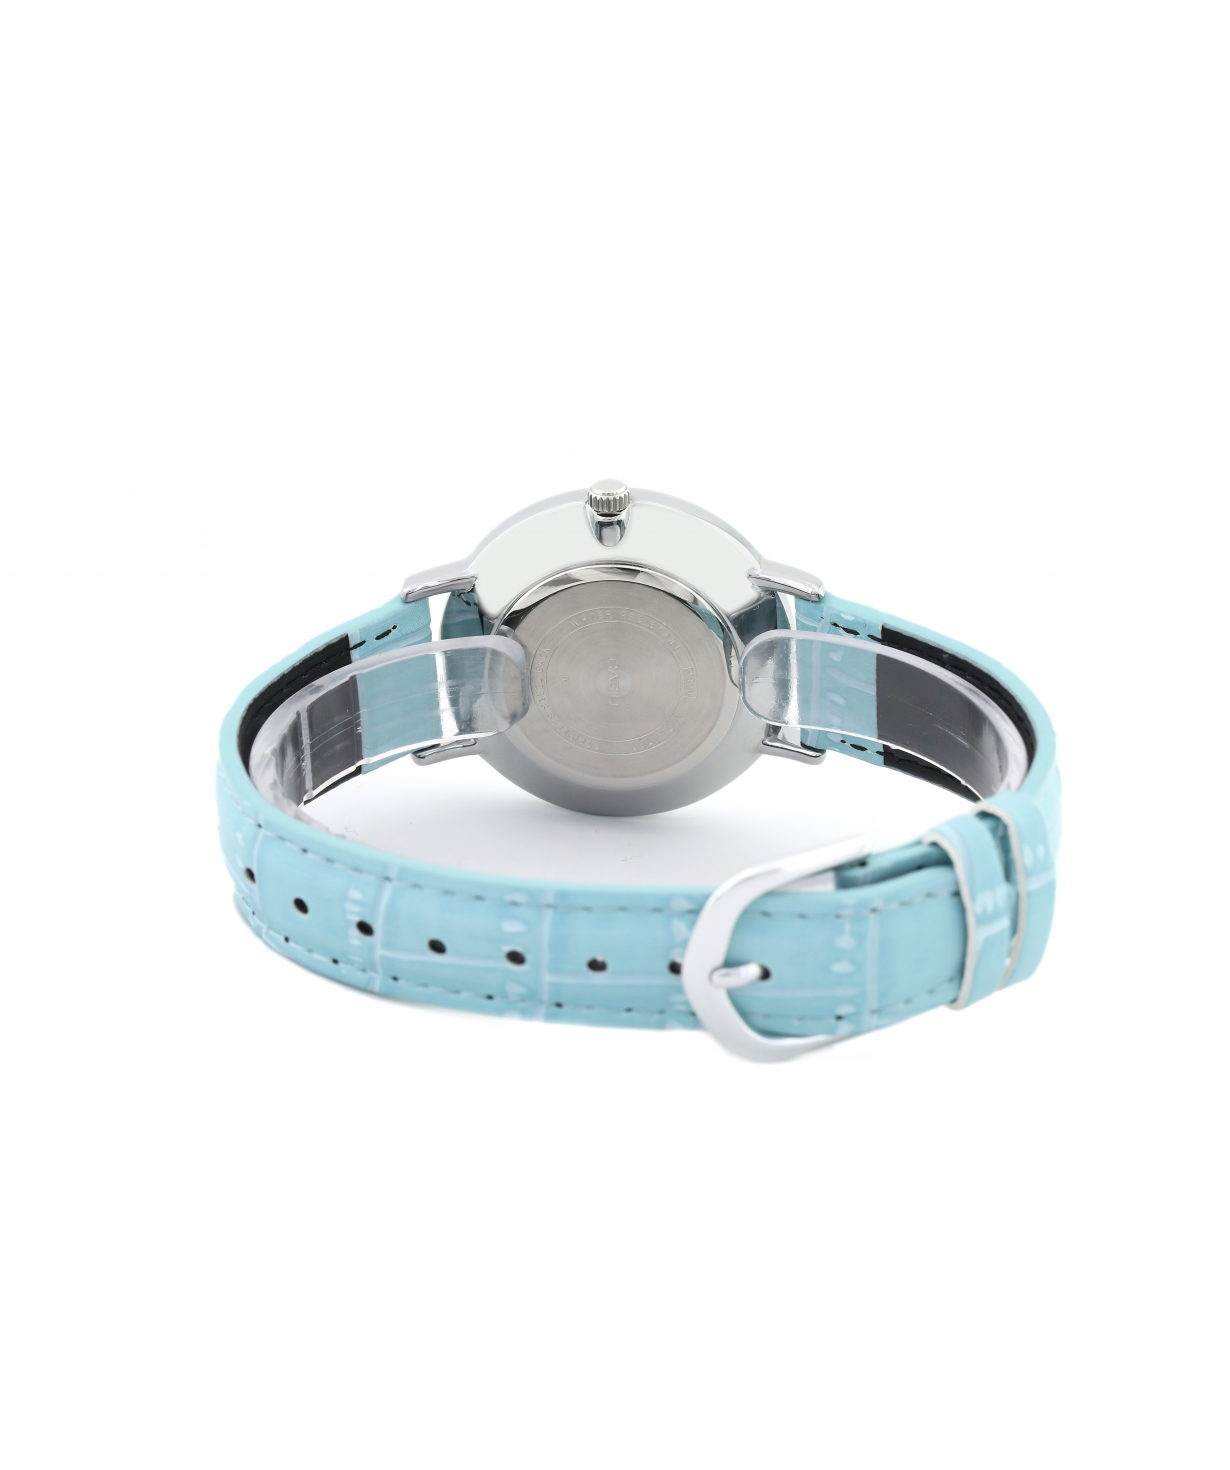 Wristwatch `Casio` LTP-VT01L-7B3UDF